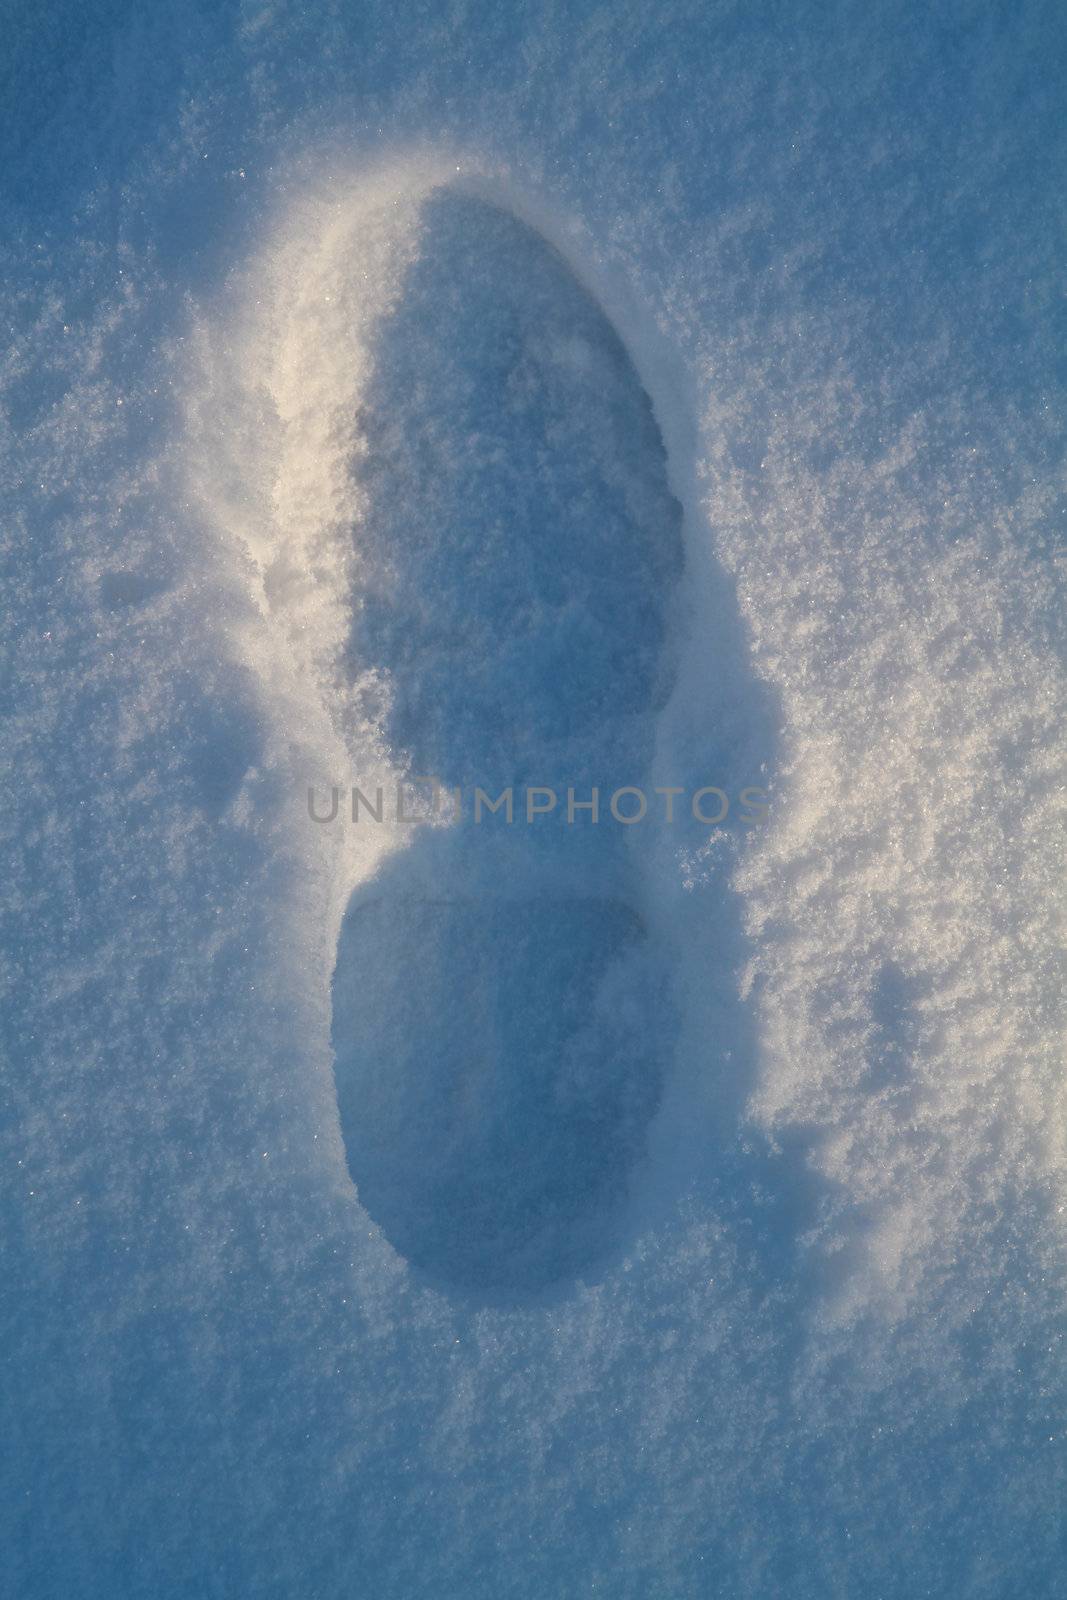 Footprint in snow by litleskare